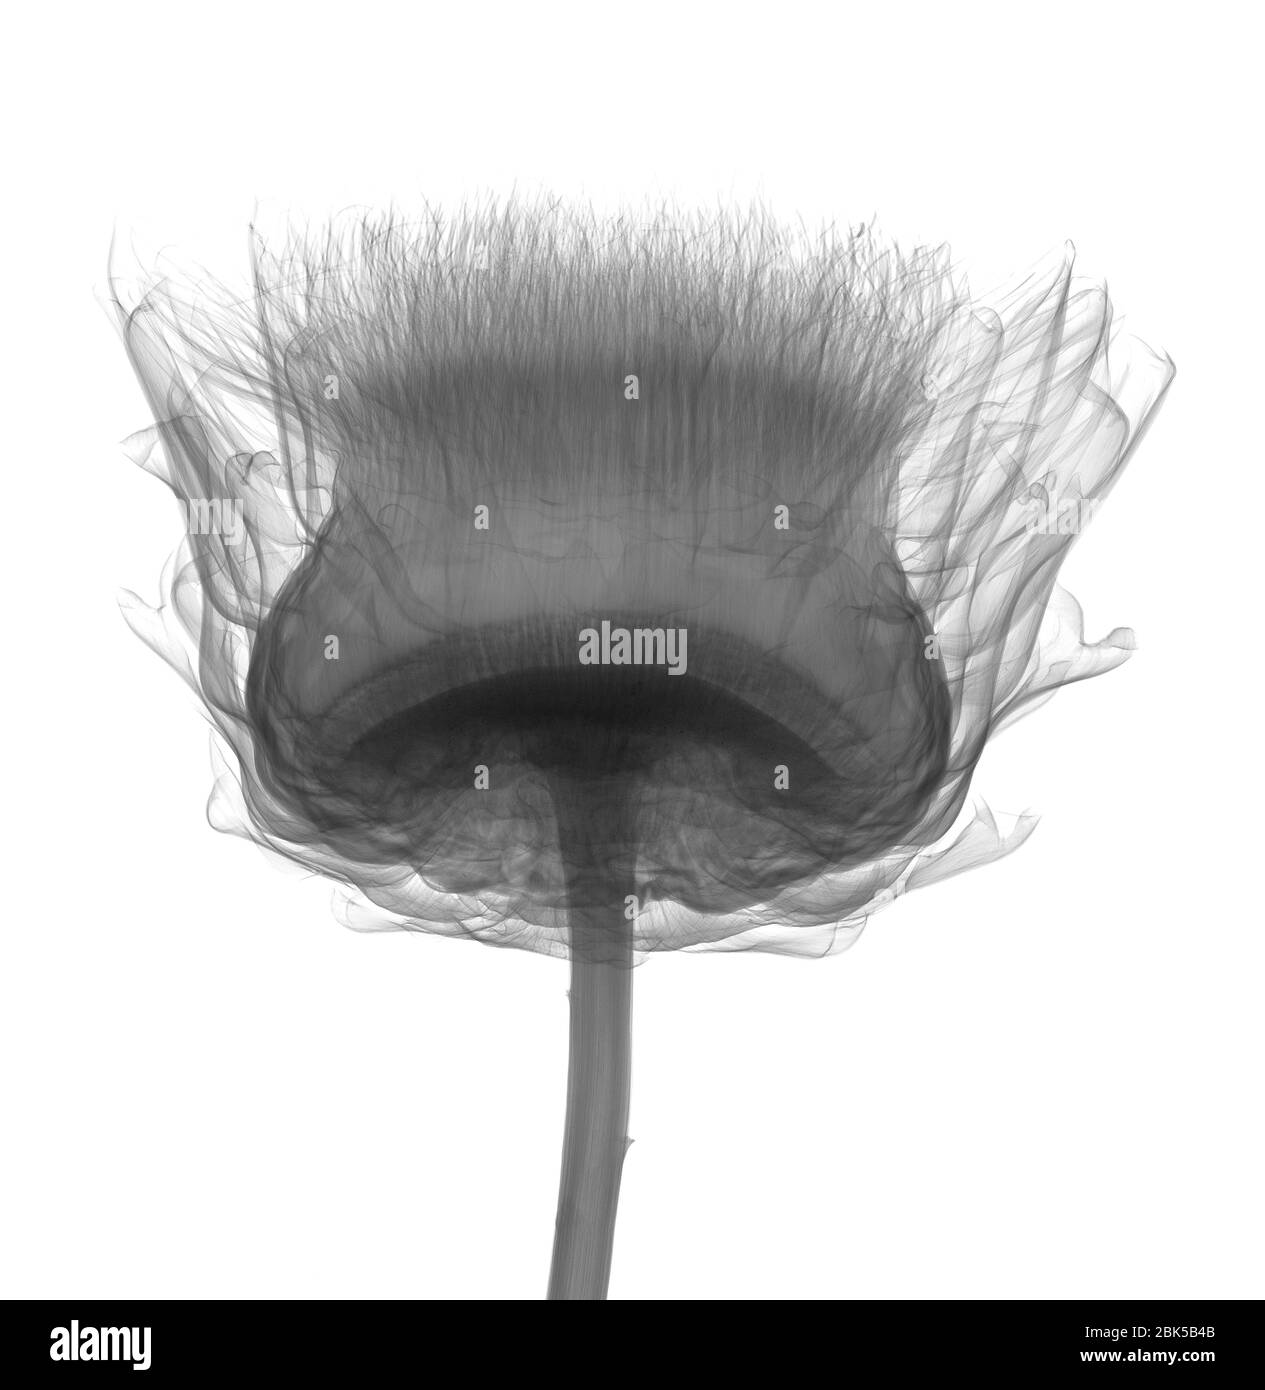 Thistle (Carlina sp.), X-ray. Stock Photo